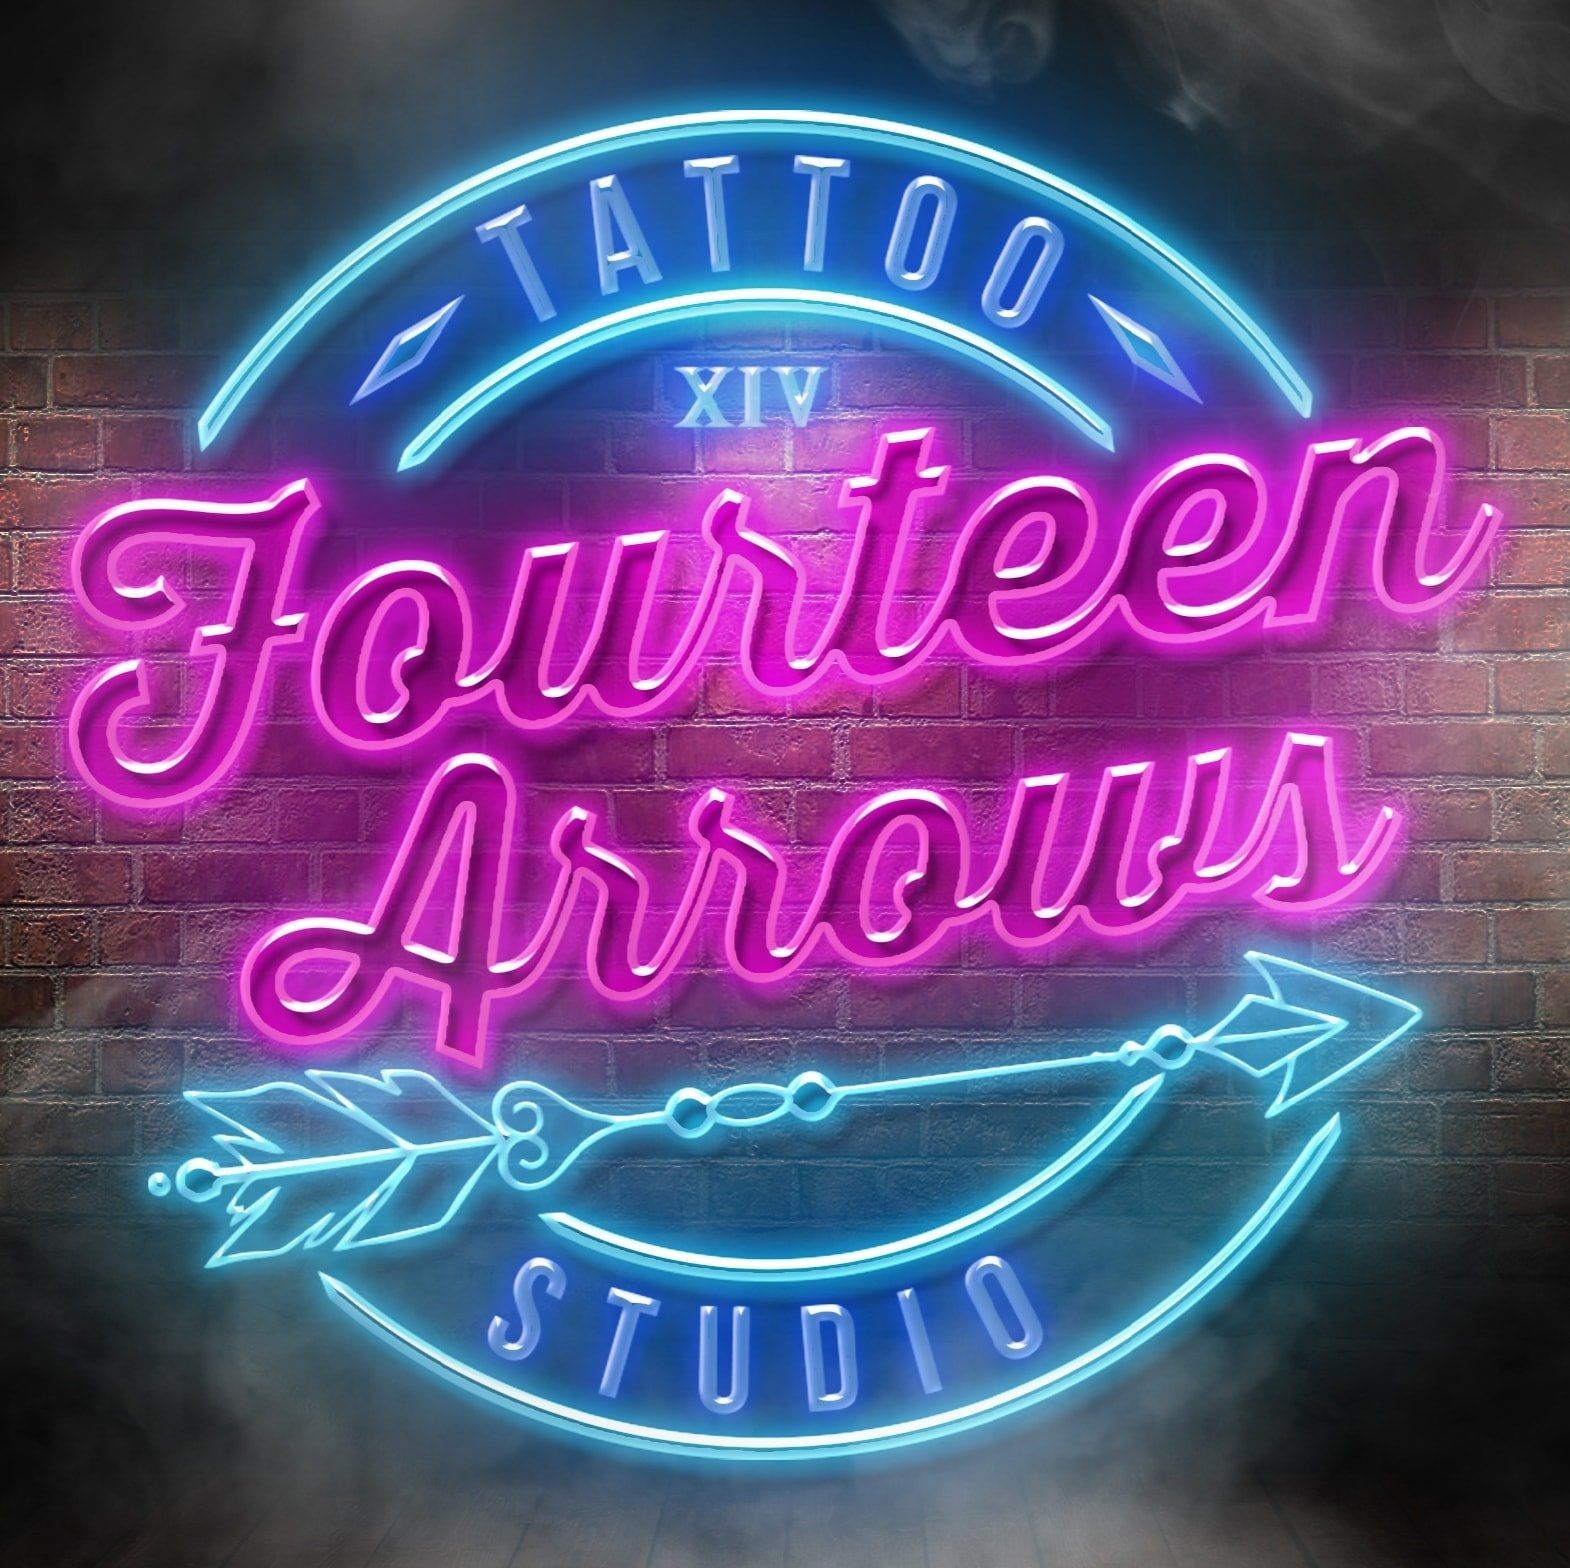 Fourteen Arrows logo